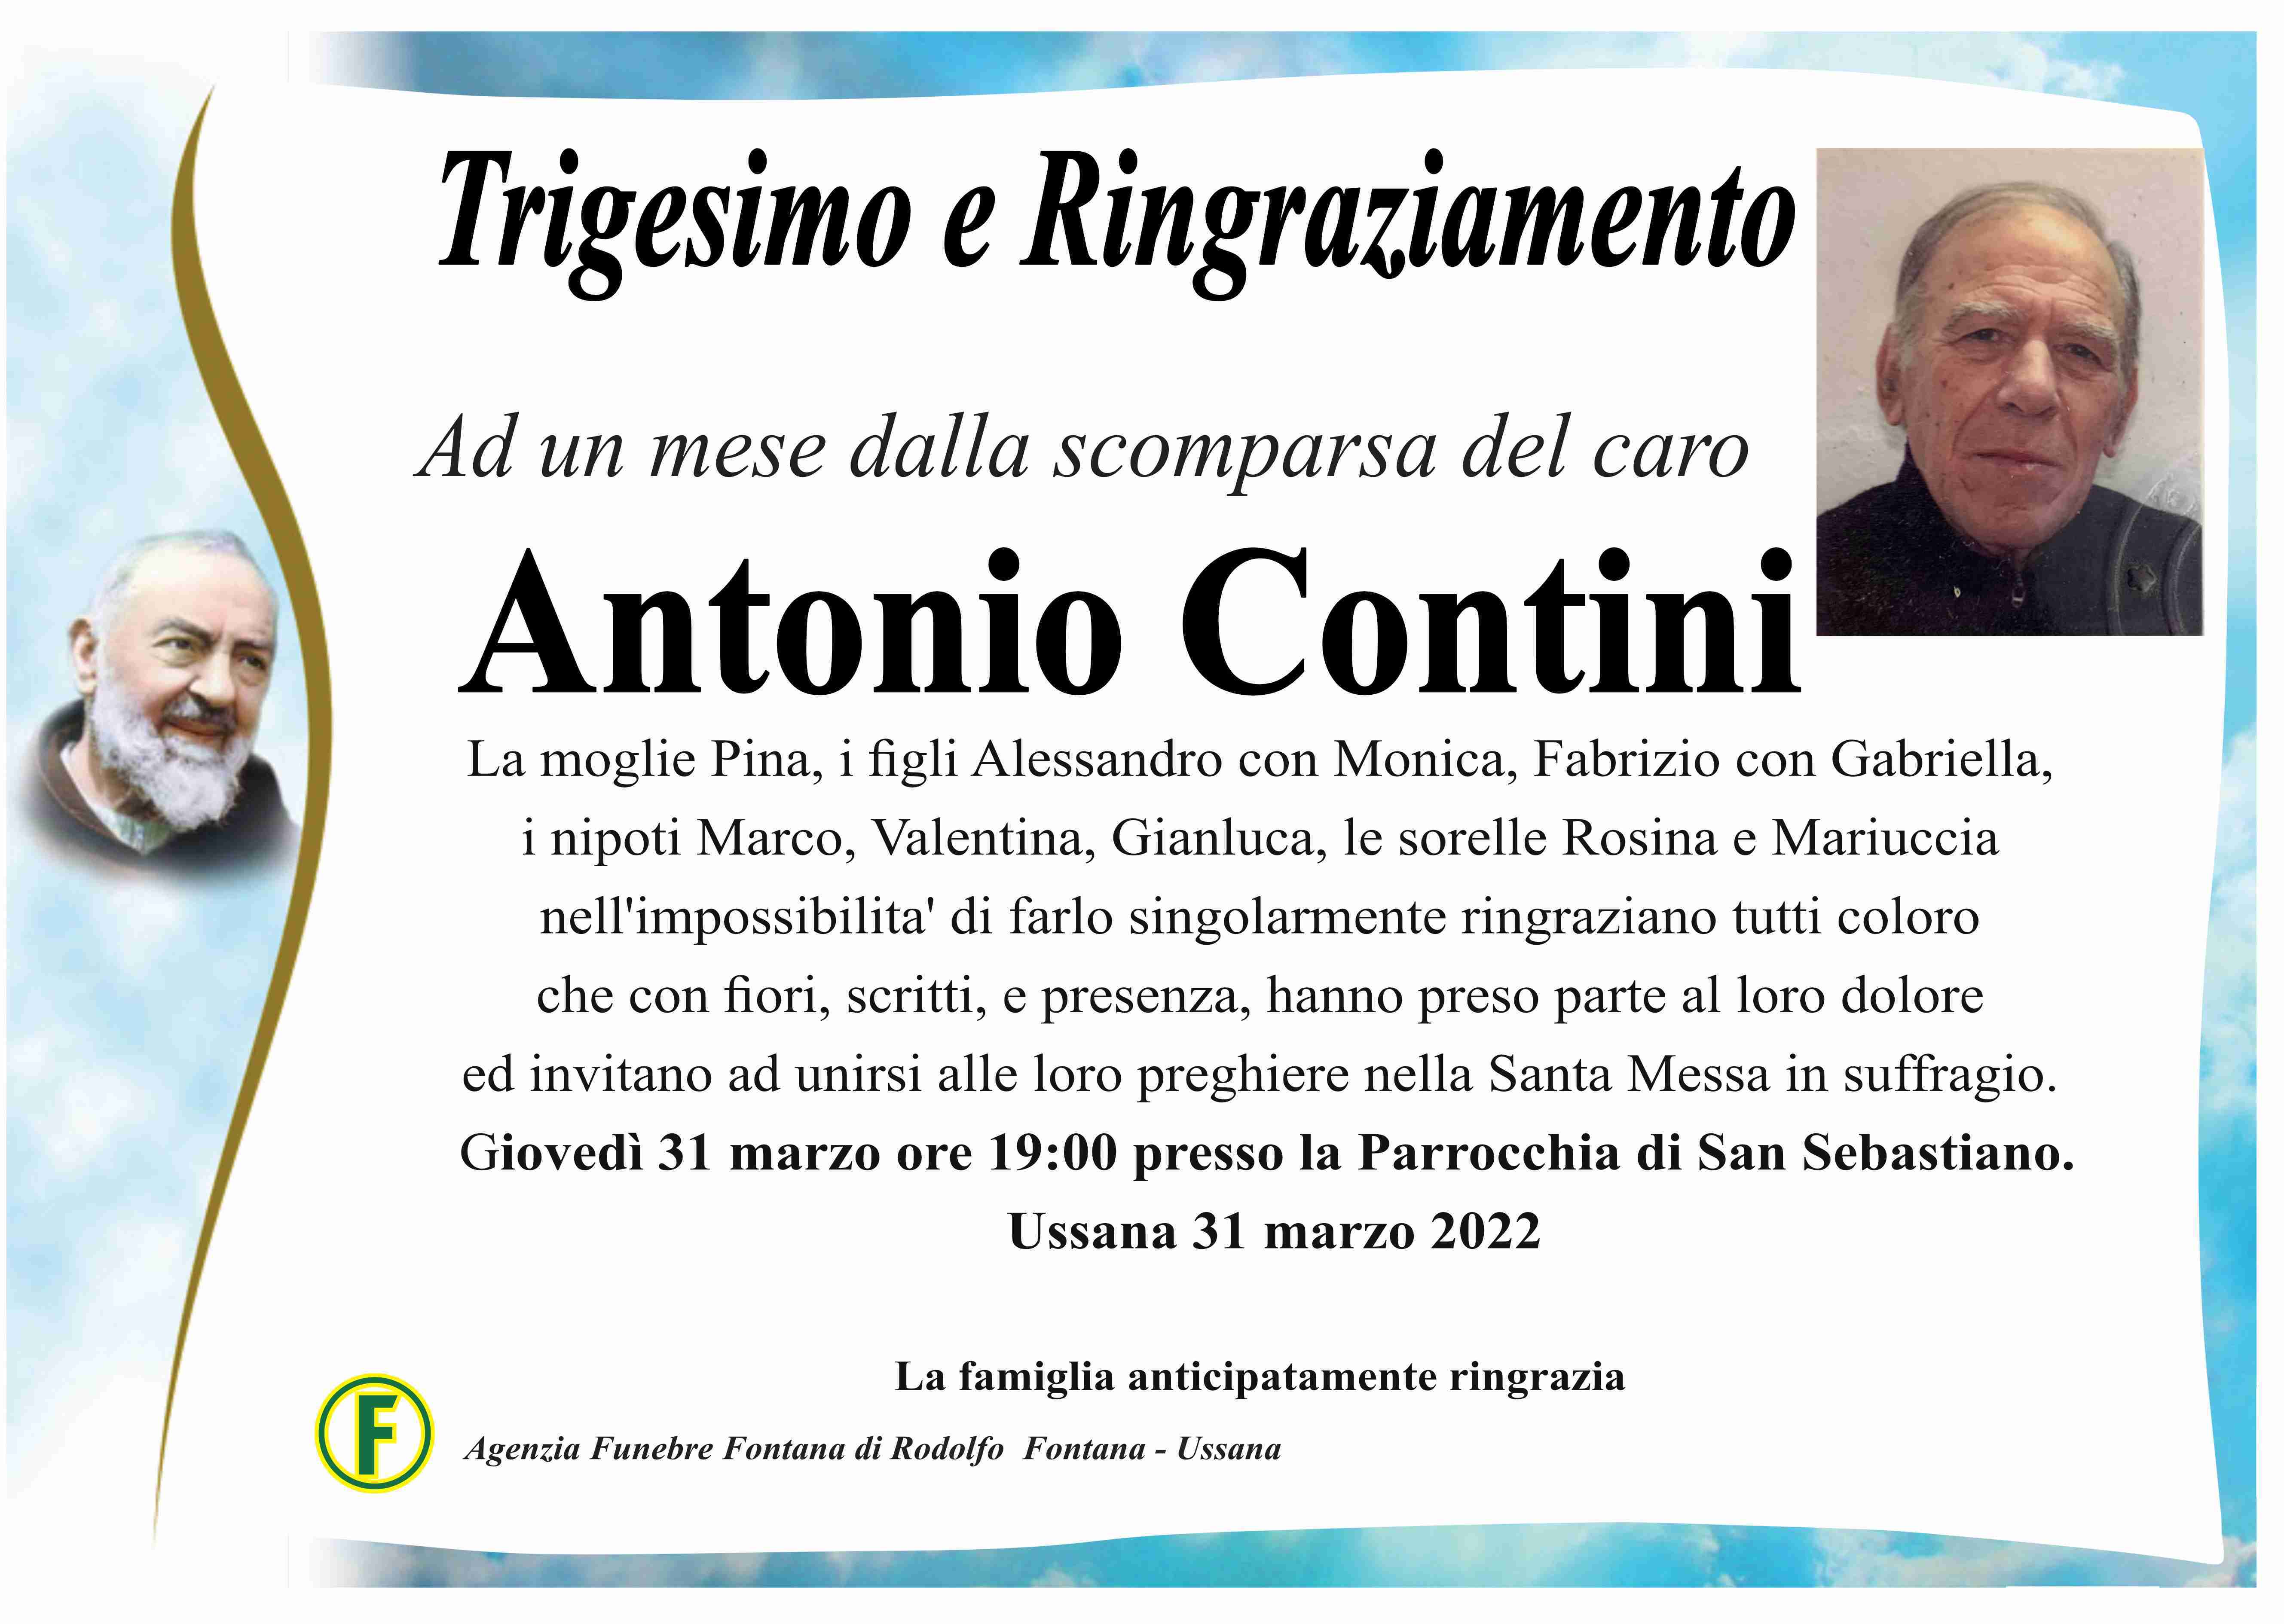 Antonio Contini